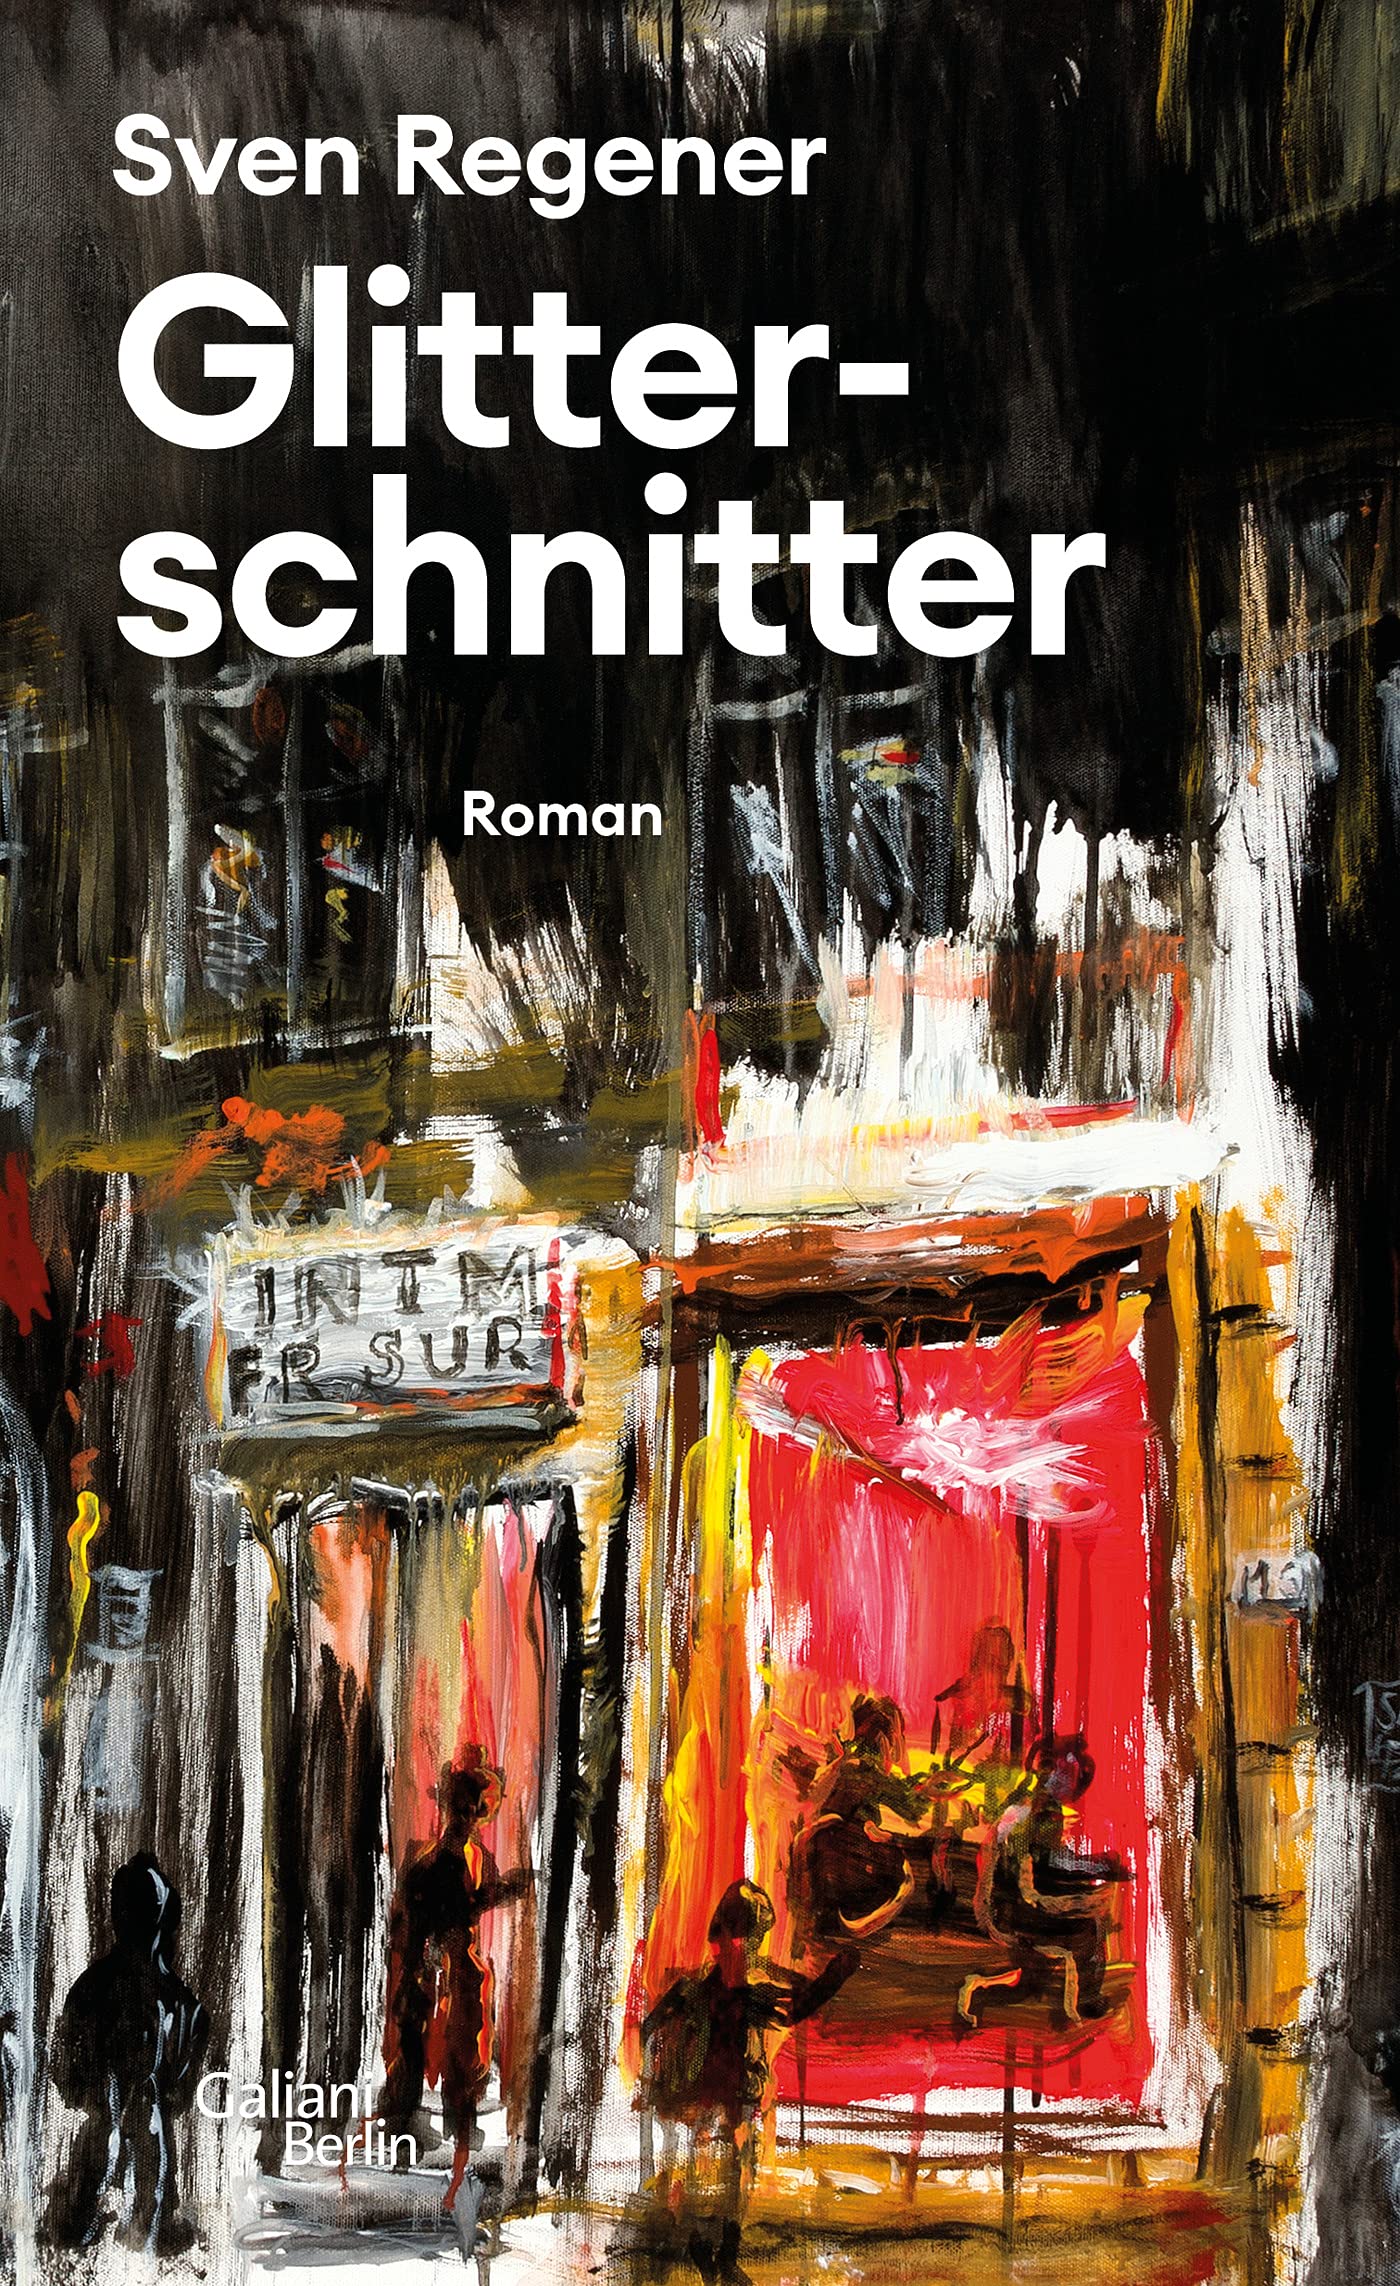 Buchcover von Sven Regener: Glitterschnitter